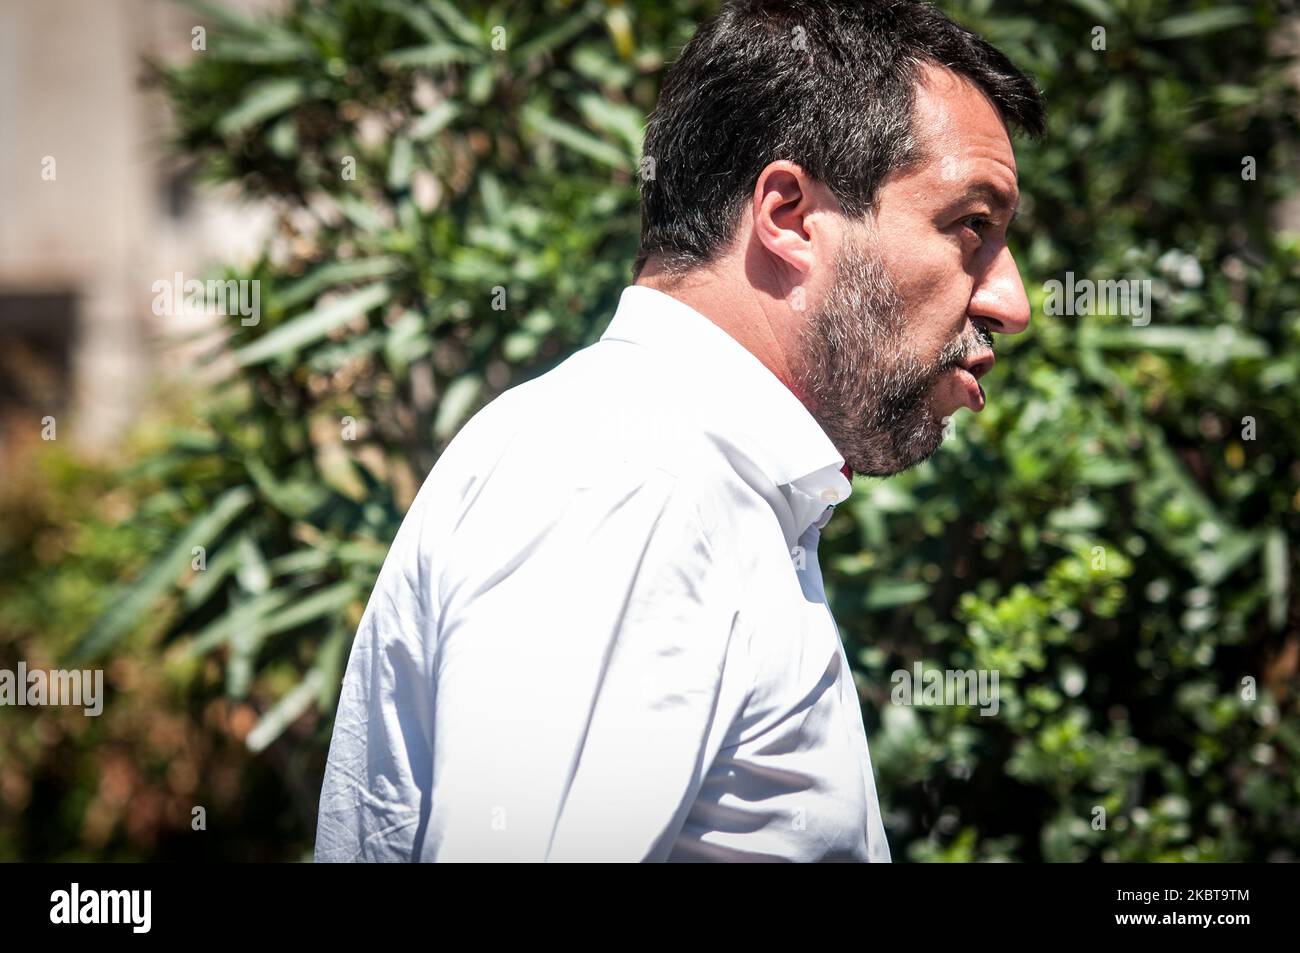 Le chef du parti politique de Lega Matteo Salvini proteste lors d'une manifestation appelée 'Blocca Italia' (Block Italy) sur 9 juillet 2020 à Rome, en Italie. Le dirigeant de la Lega proteste contre le gouvernement italien qui, selon lui, bloque l'économie italienne et demande la libération de la situation d'Autostrade S.p.A. (photo d'Andrea Ronchini/NurPhoto) Banque D'Images